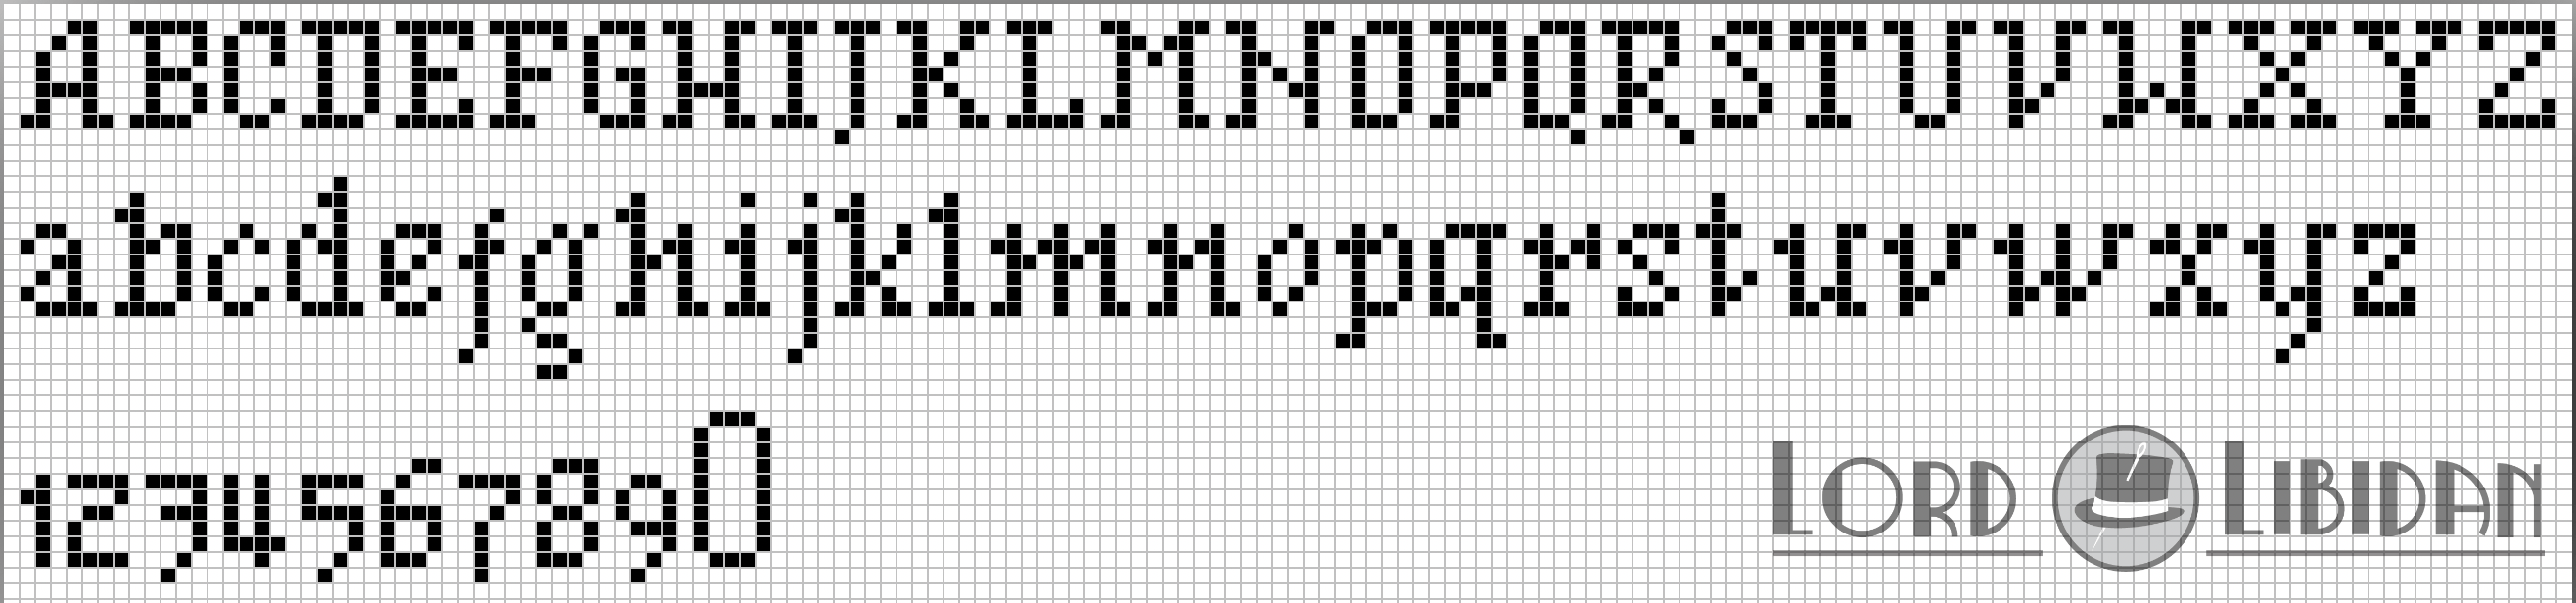 Minature Serif Cross Stitch Alphabet Pattern Free Download by Lord Libidan